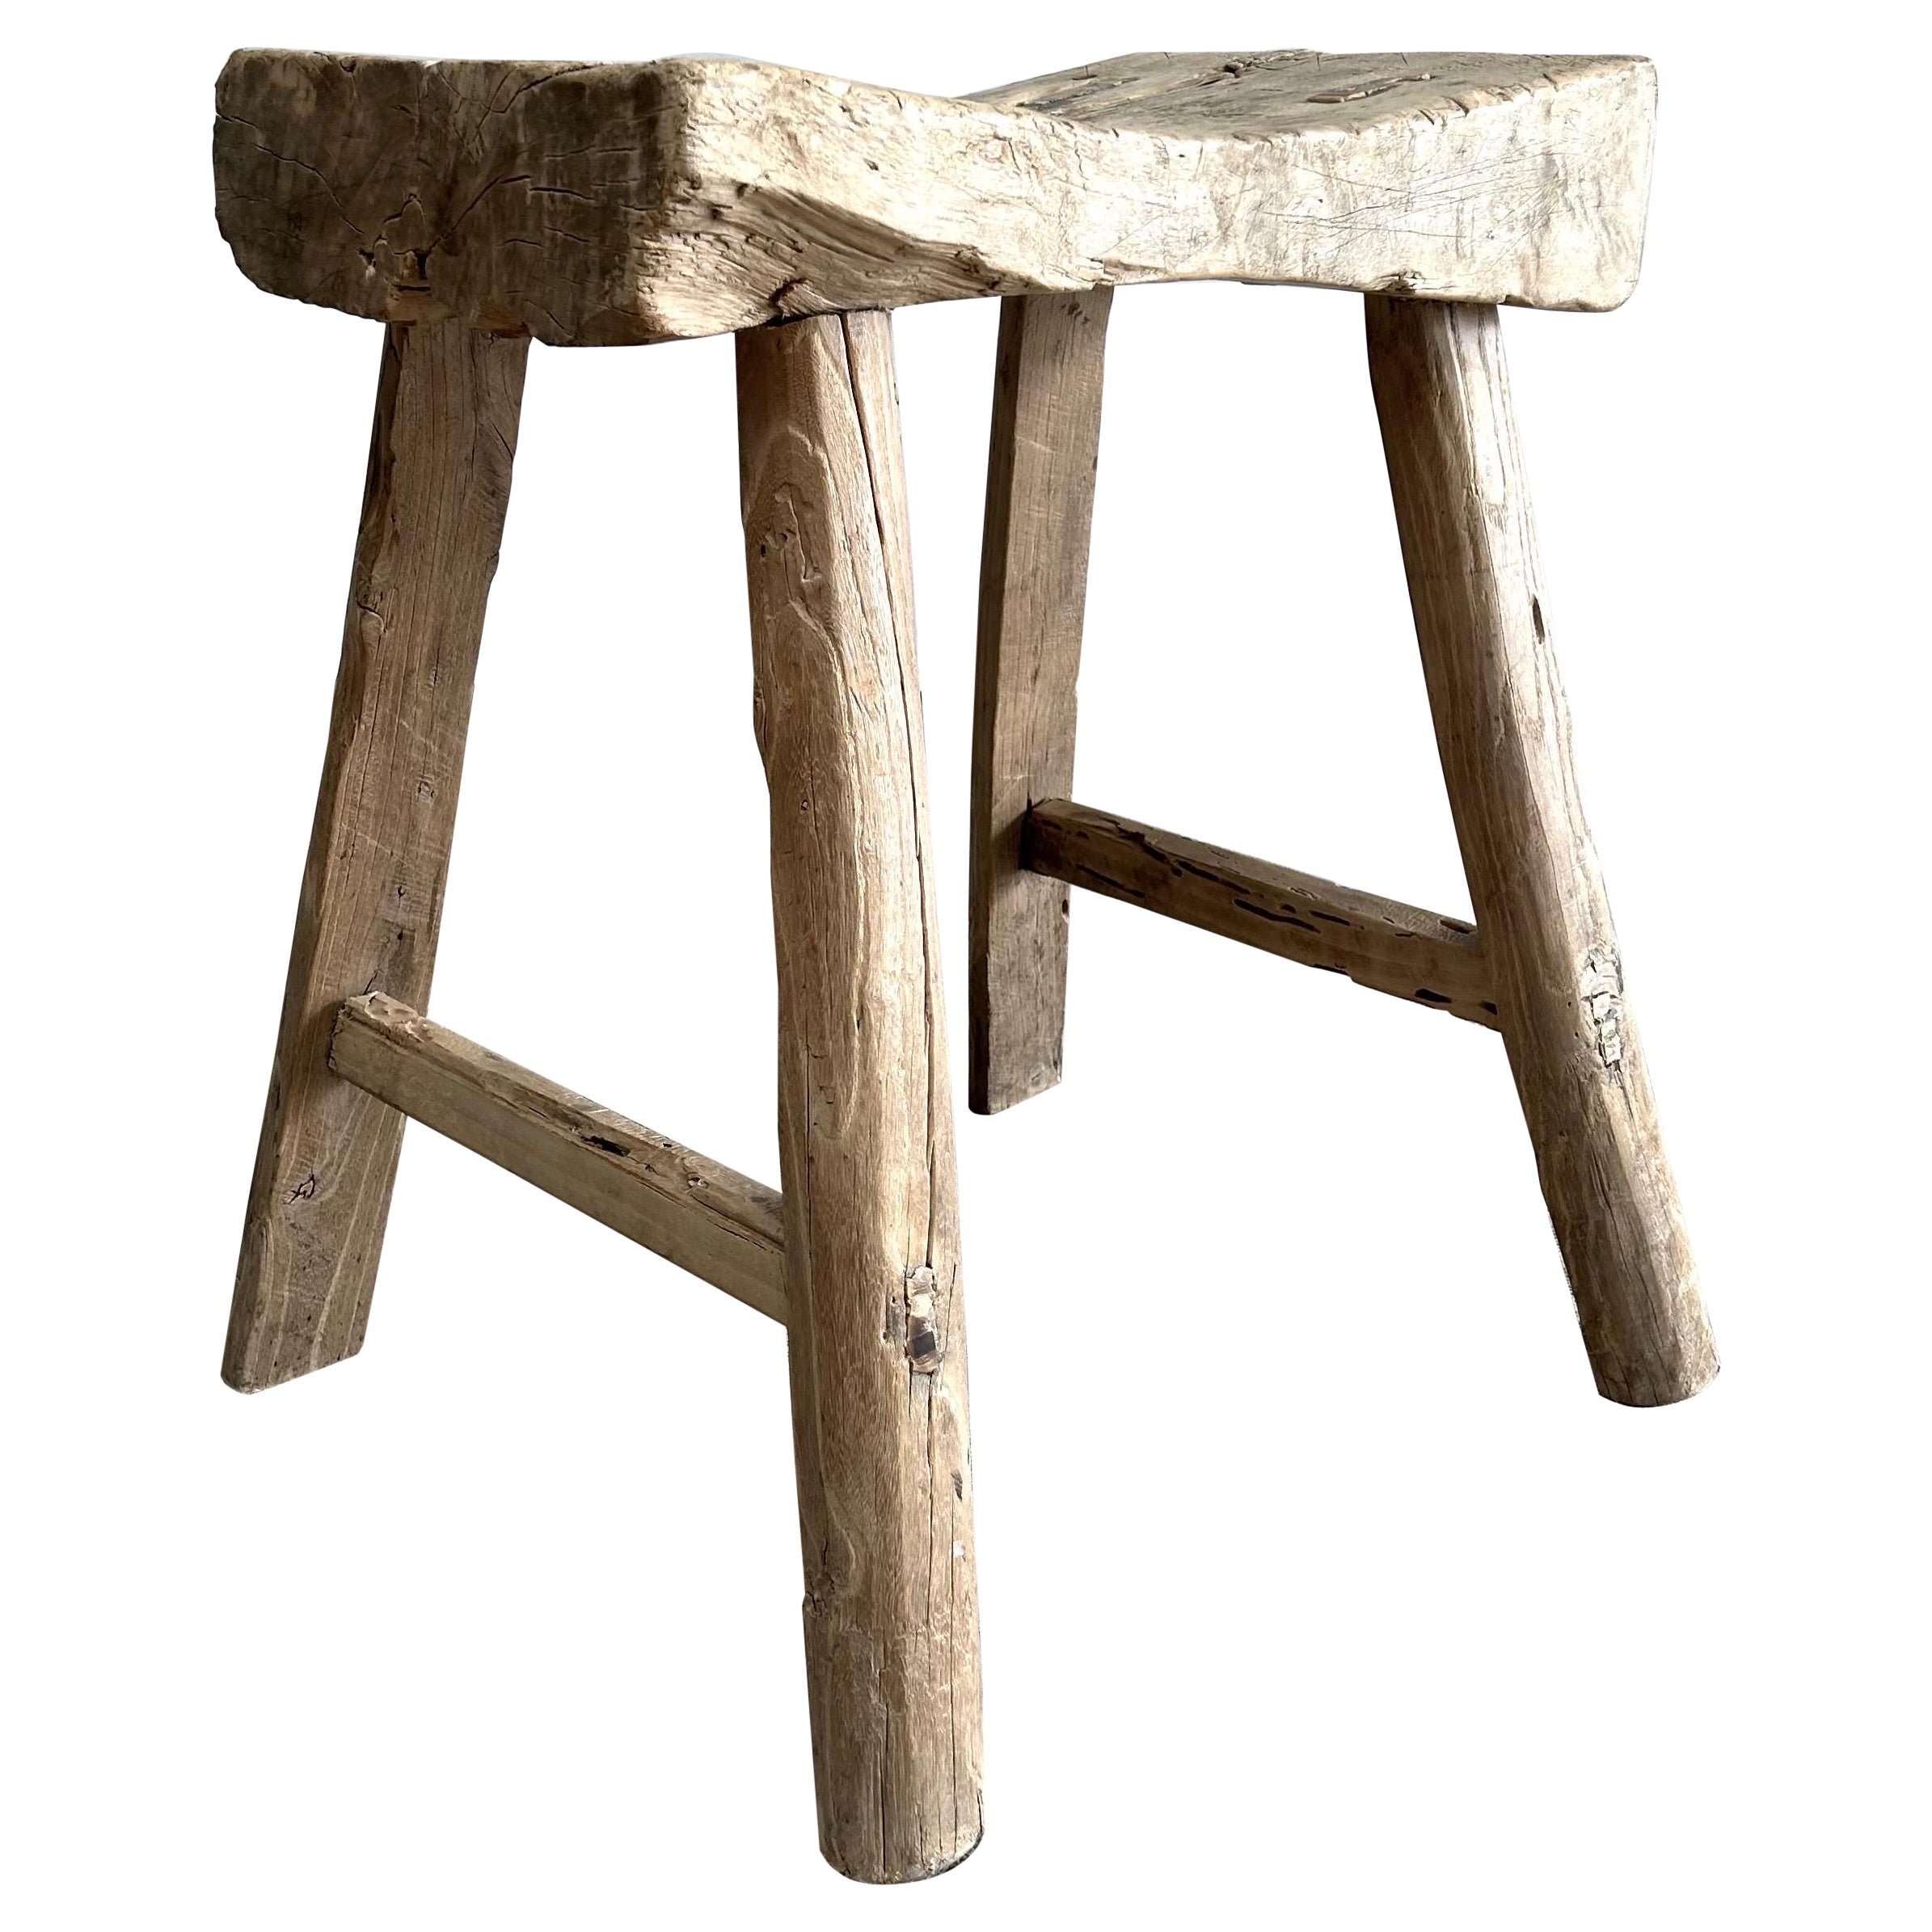 Vieux tabouret en bois d'orme avec siège incurvé